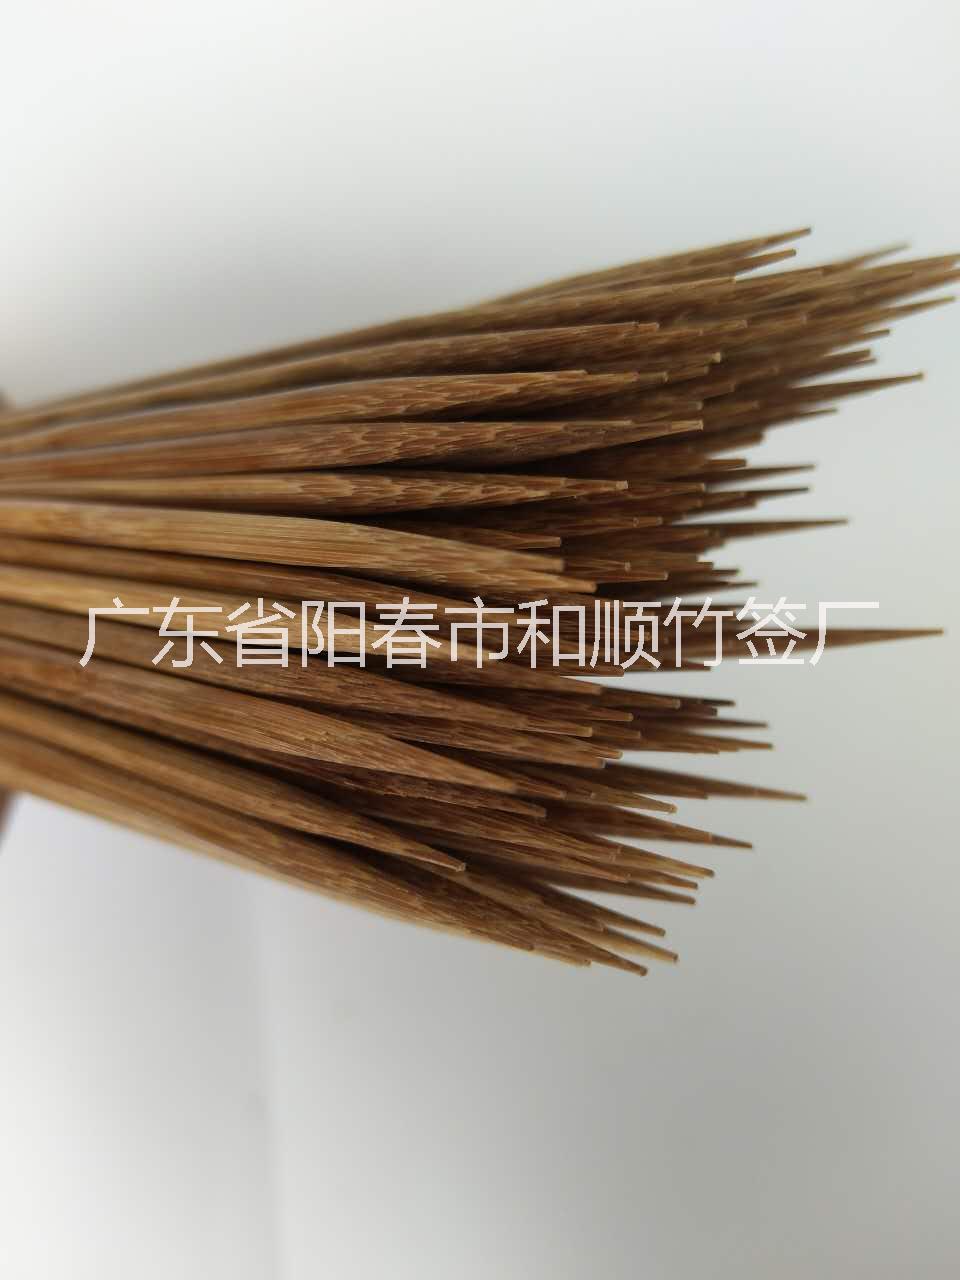 广东阳江六盘水市竹签批发3.0mm 订制 竹签厂家 竹签3.0 烧烤签